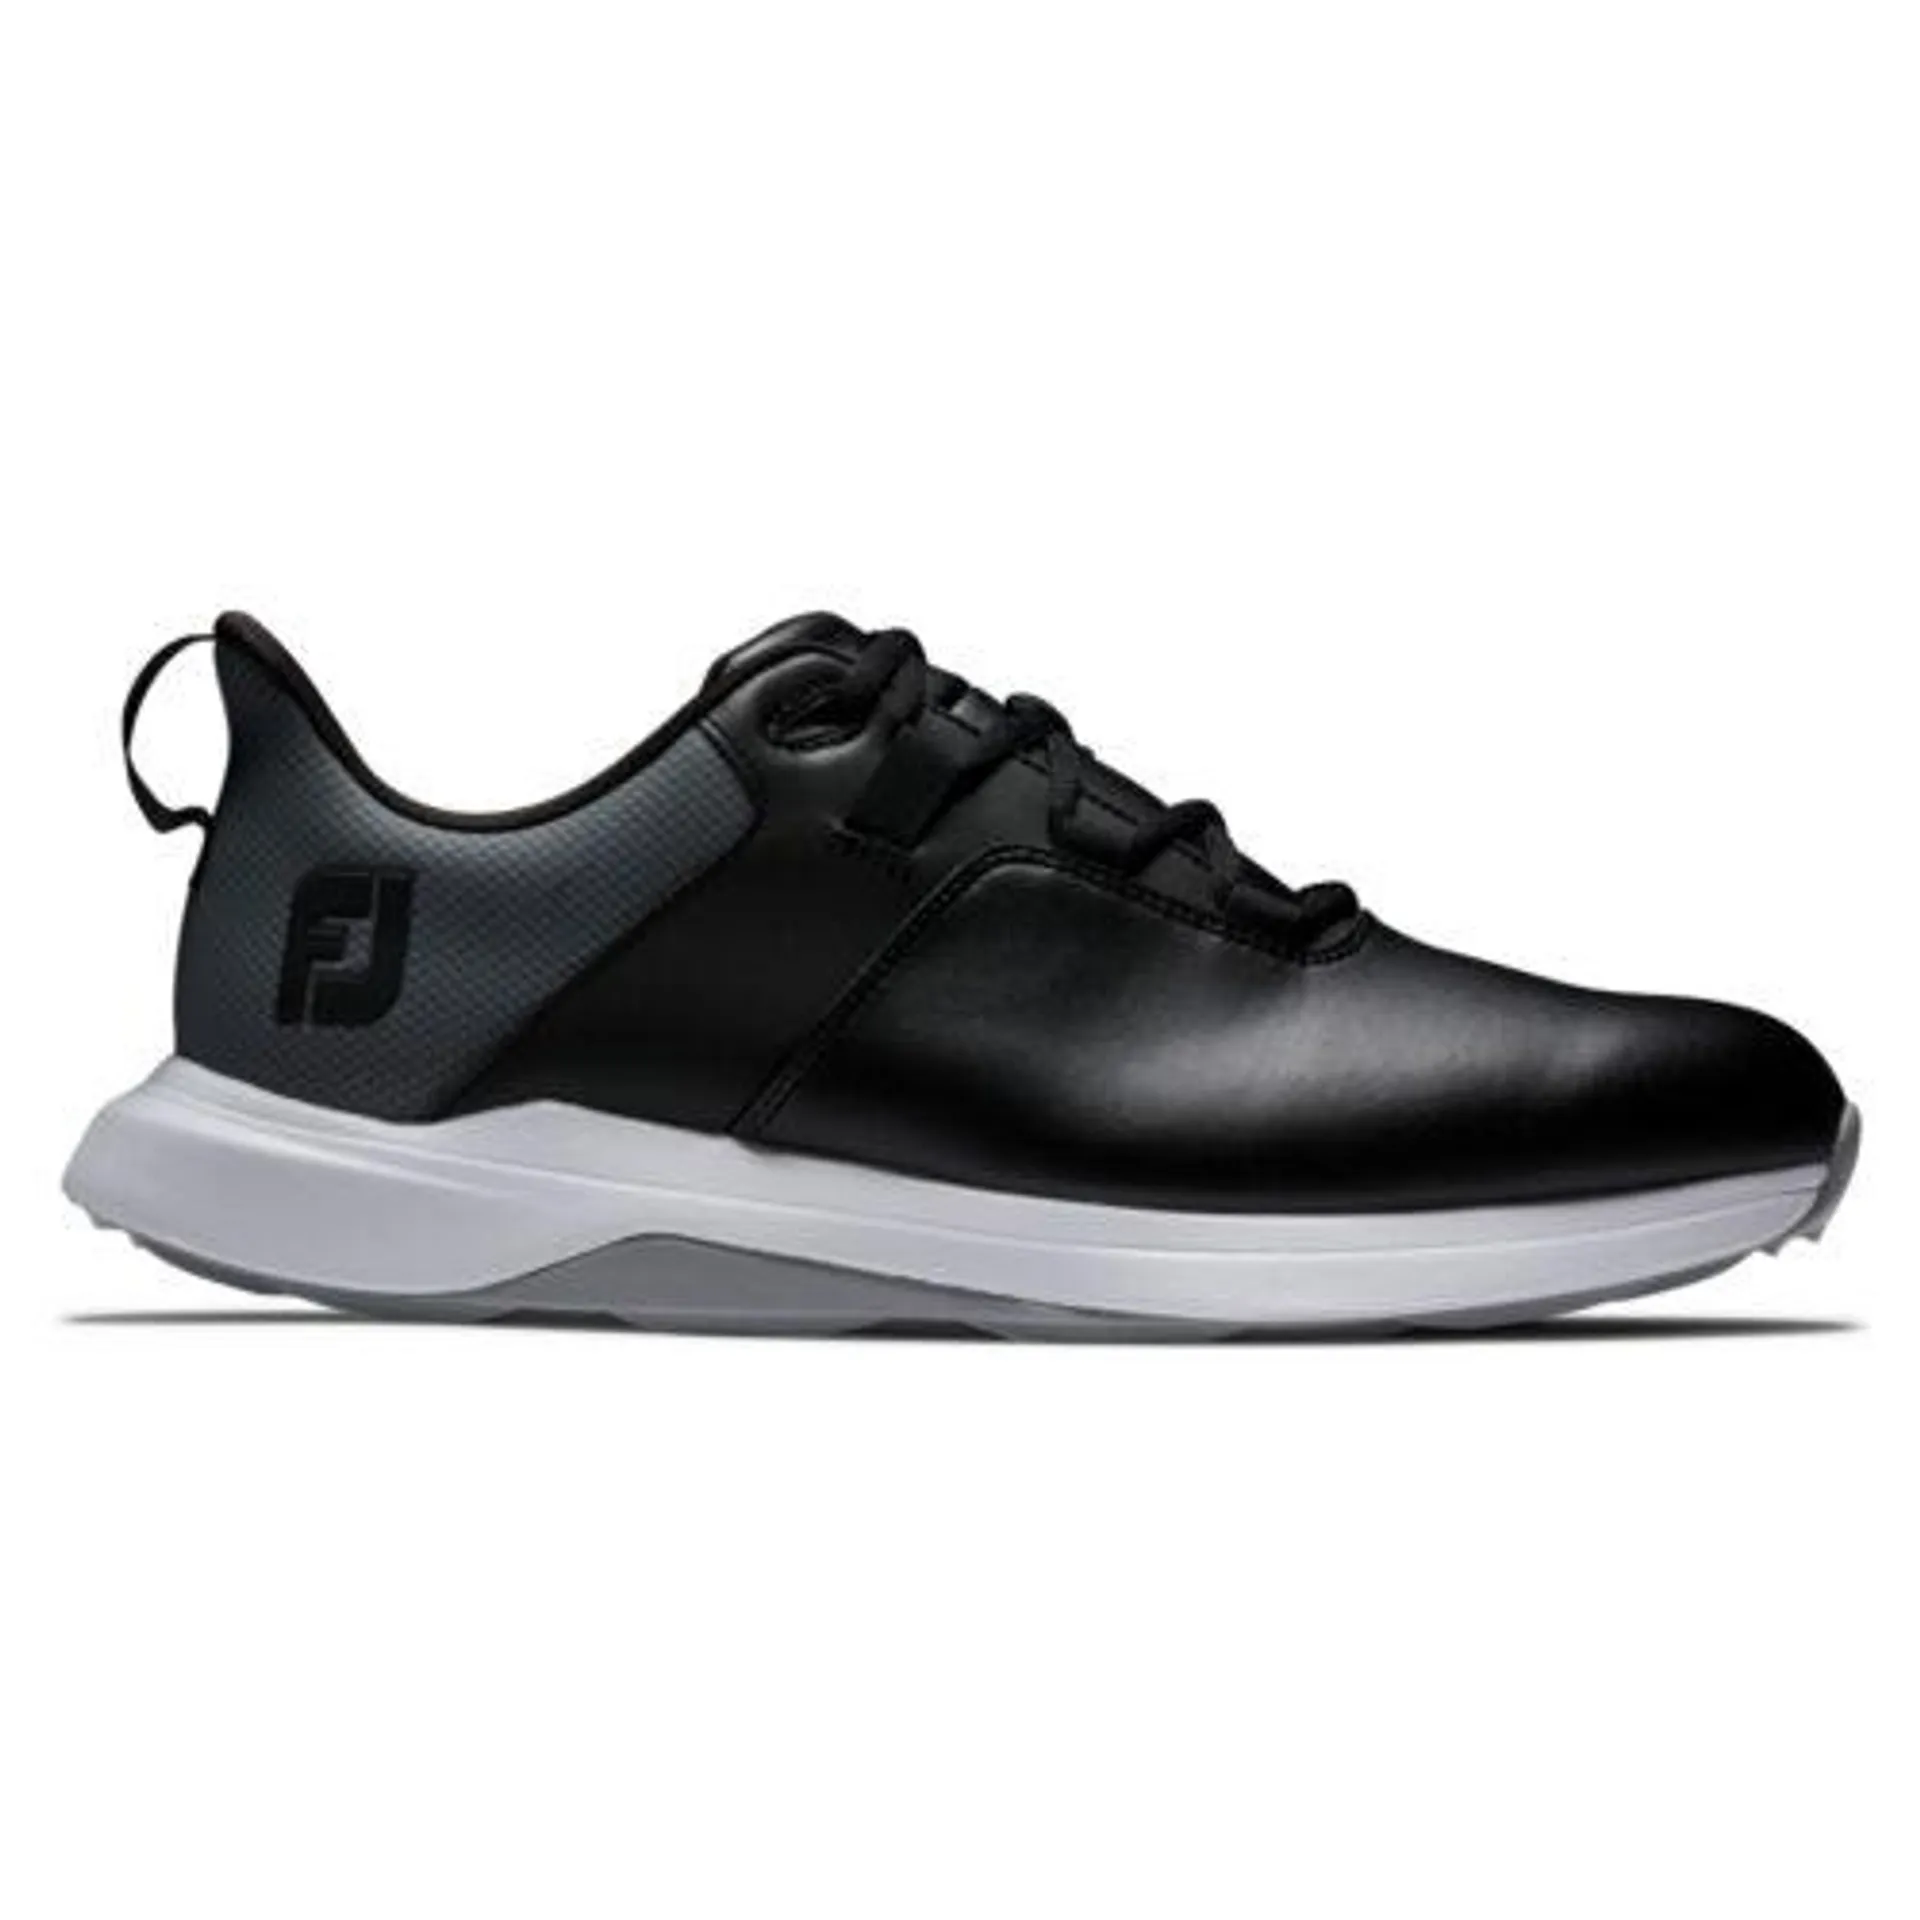 FootJoy Prolite Shoes – Black/Grey 56922